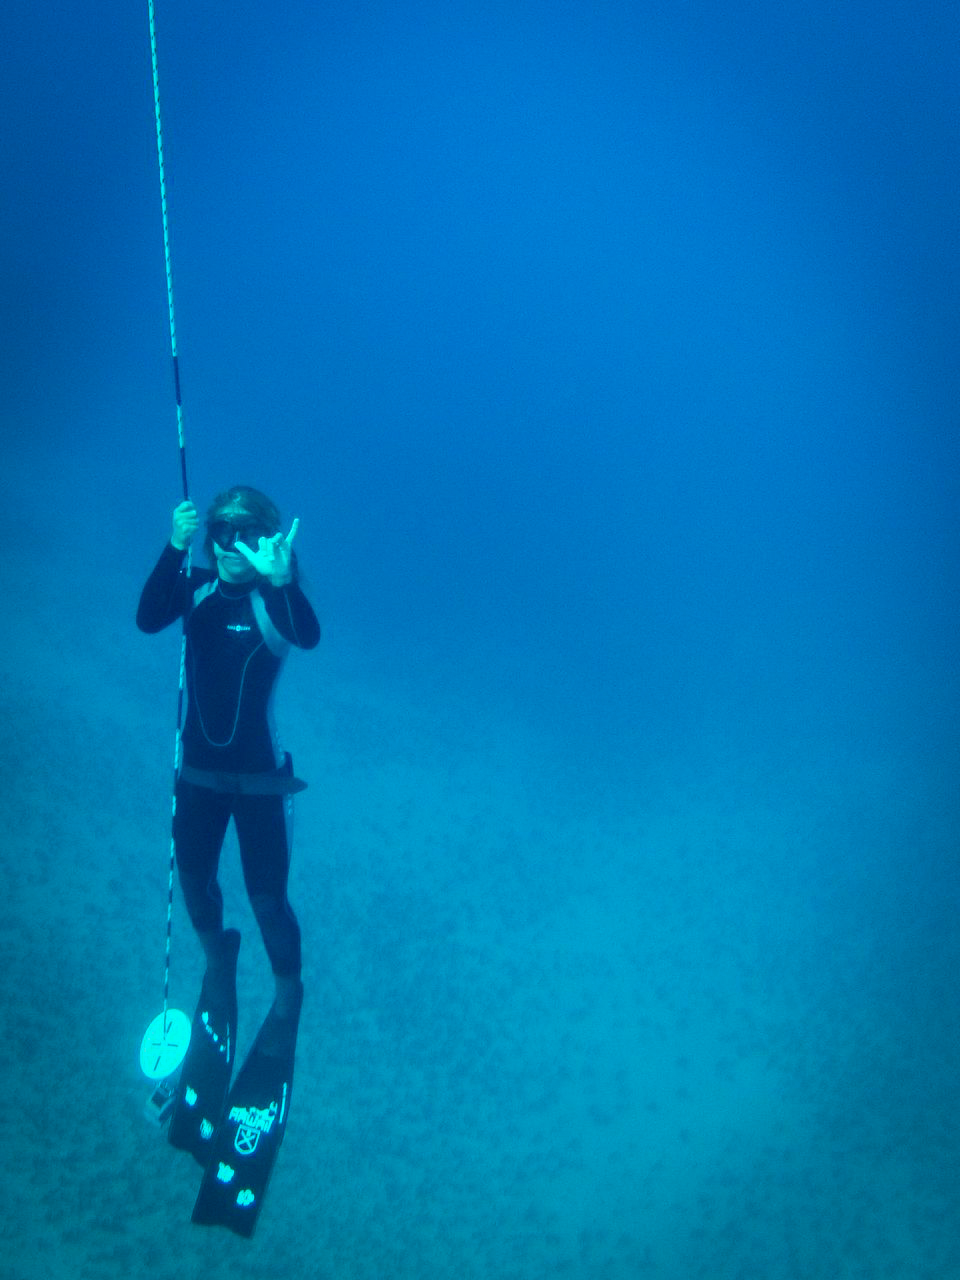 More diving photos